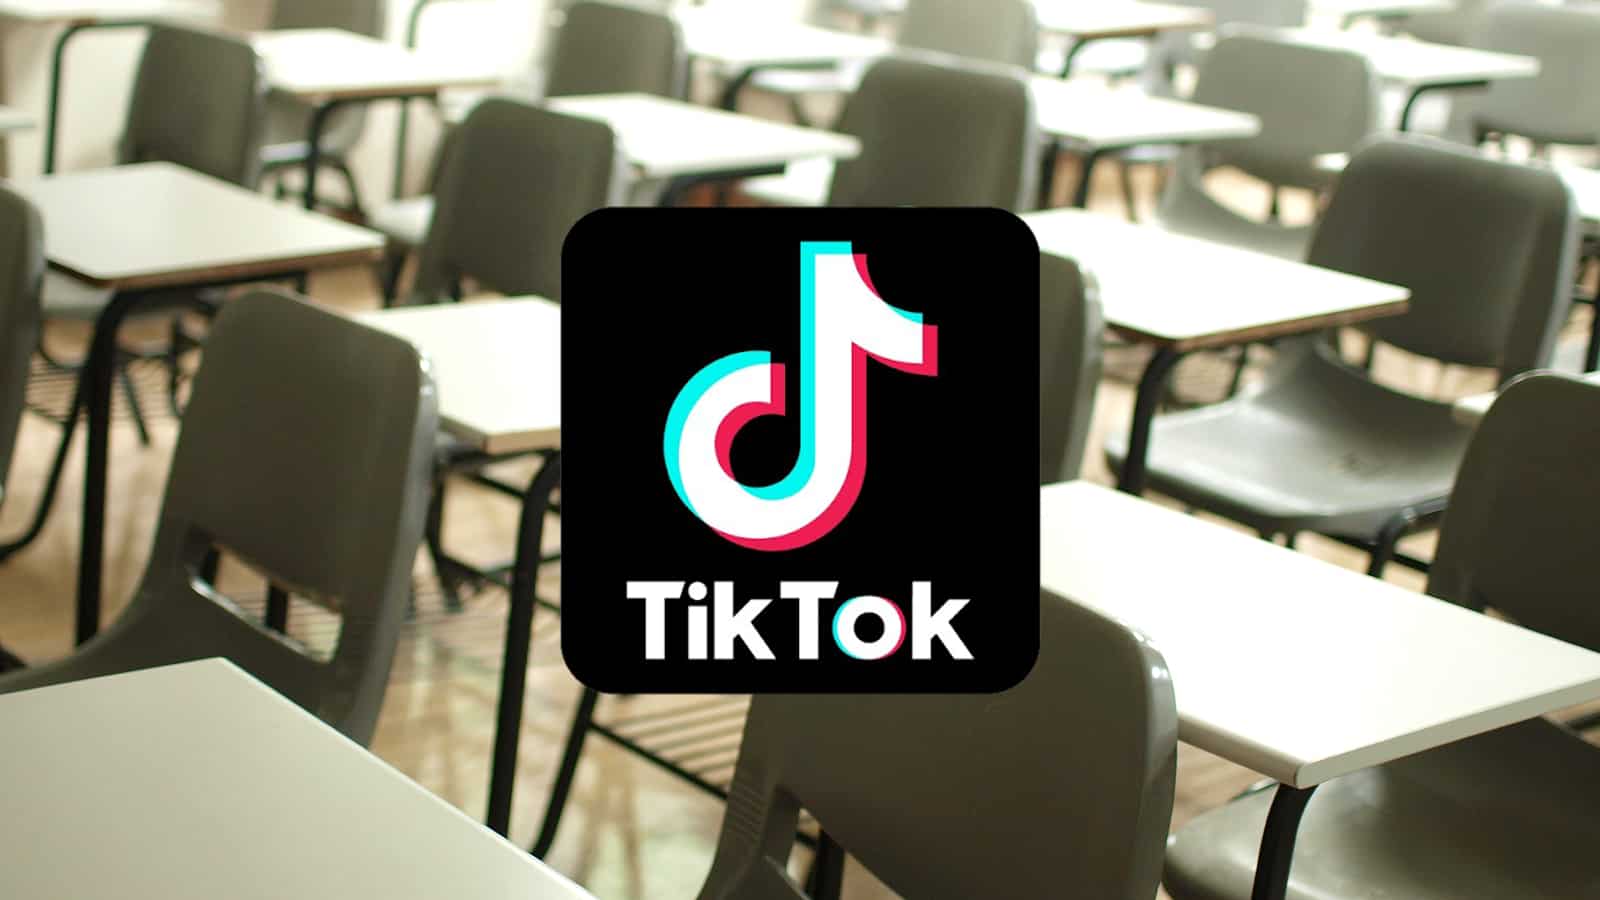 TikTok logo over a classroom